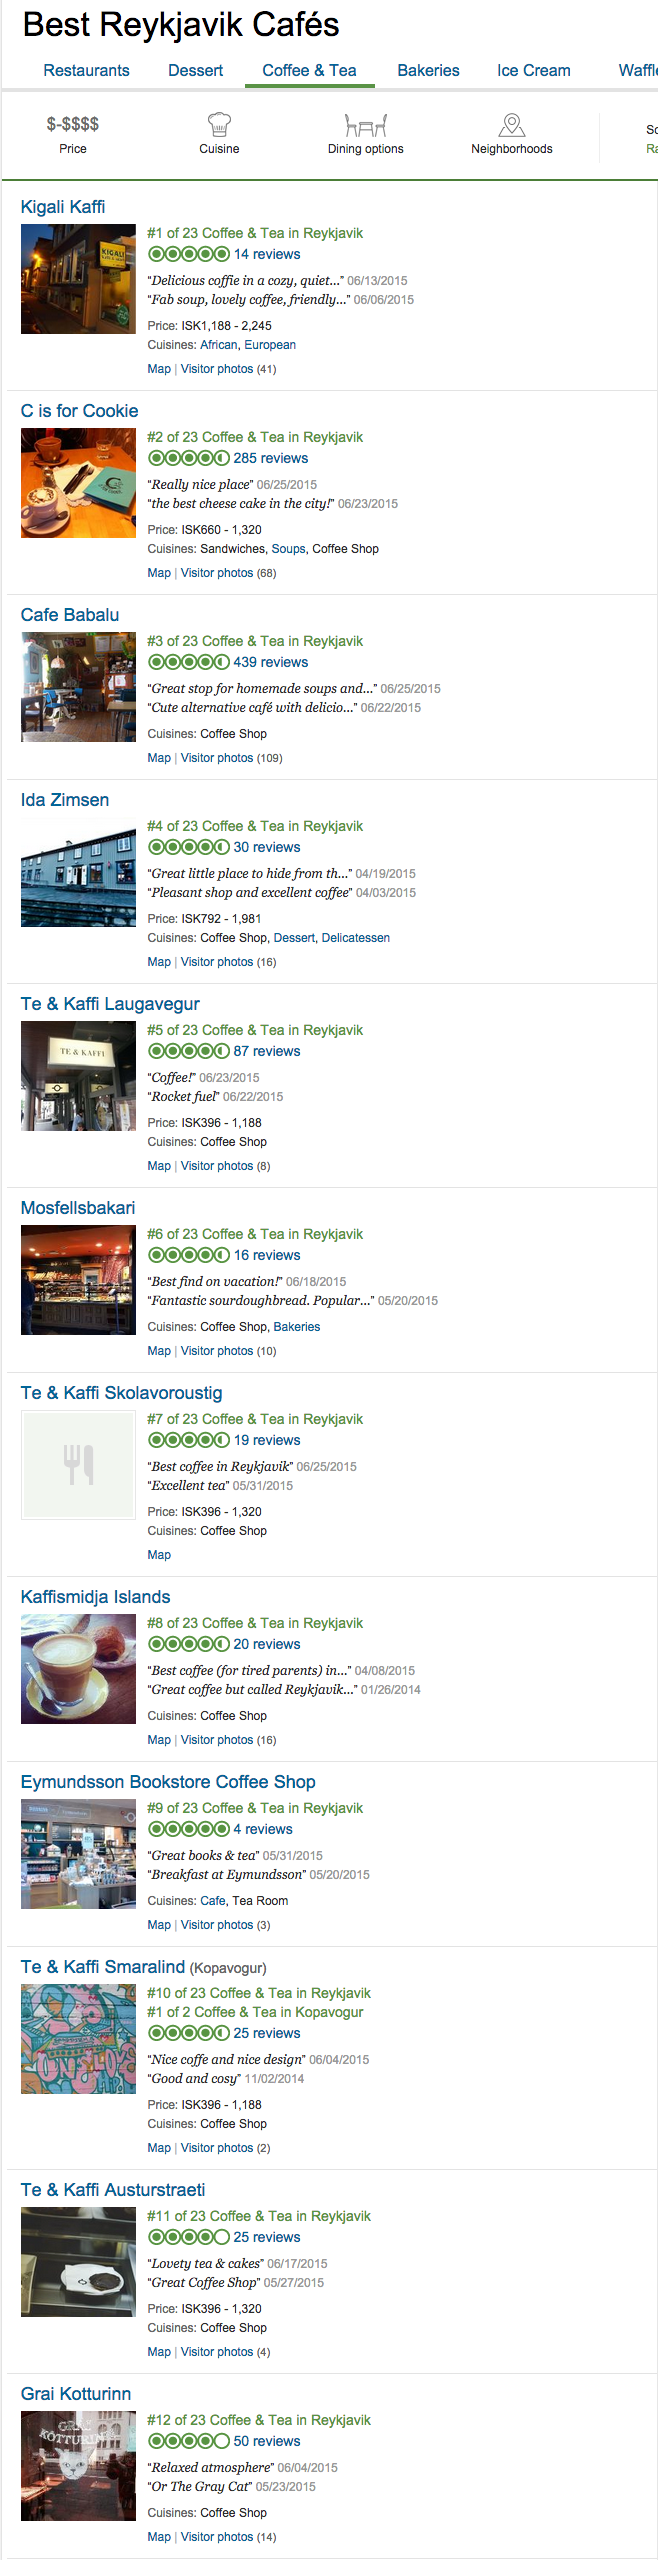 Best Cafes in Reykjavik  Iceland on TripAdvisor   Compare 27 Reykjavik Cafés with 5 070 Reviews